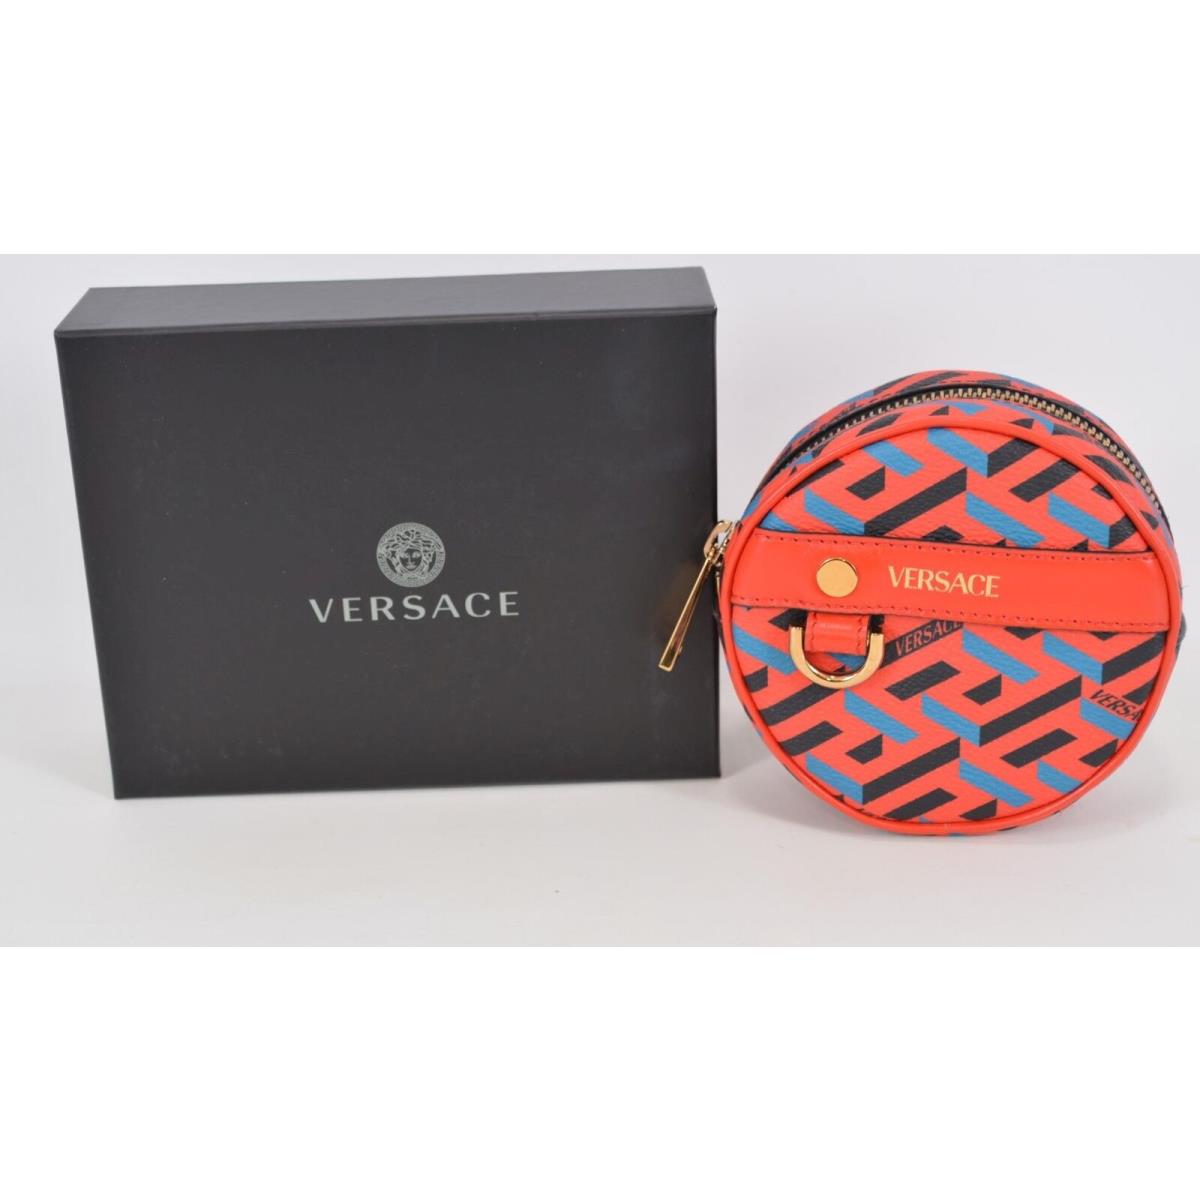 Versace La Greca Round Modular Pouch Mini Wallet Coin Purse